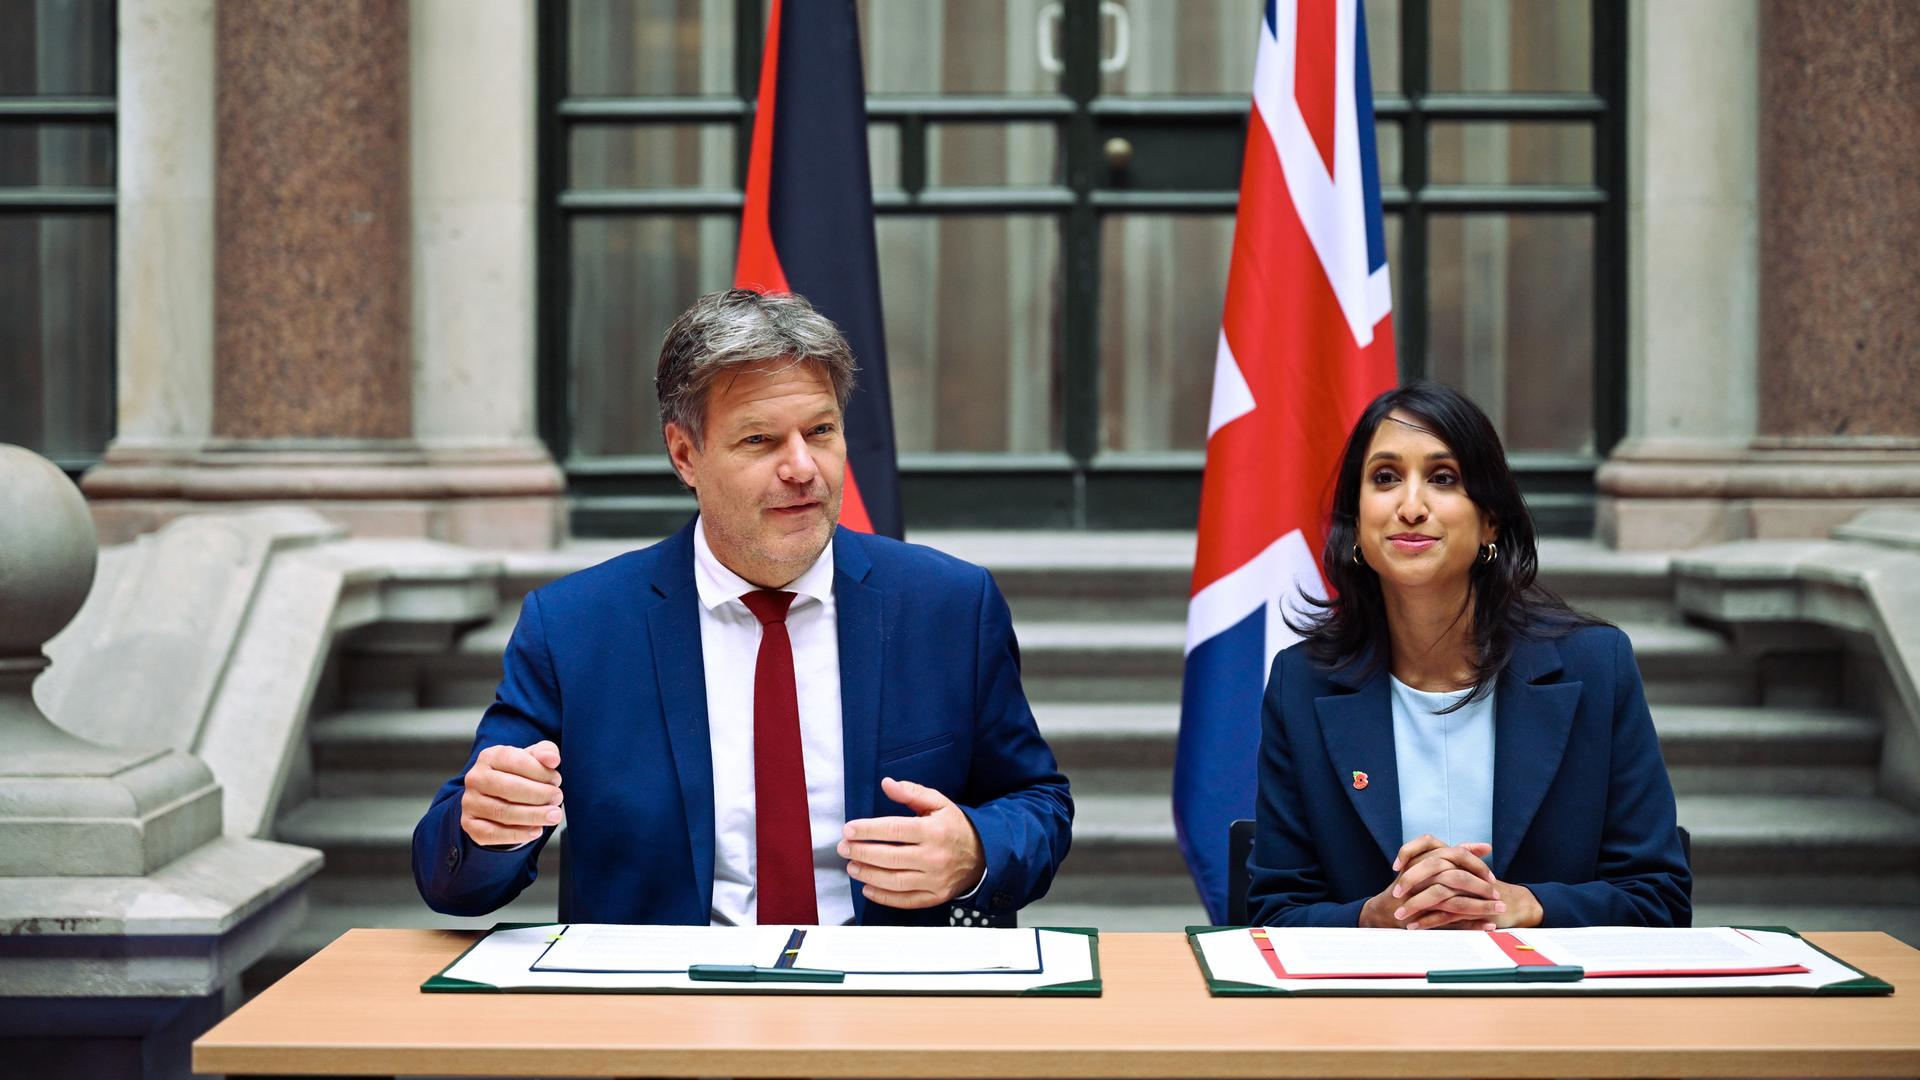 Eine Frau und ein Mann sitzen vor einem Tisch, auf dem Unterlagen liegen. Im Hintergrund hängen eine britische und eine deutsche Fahne.